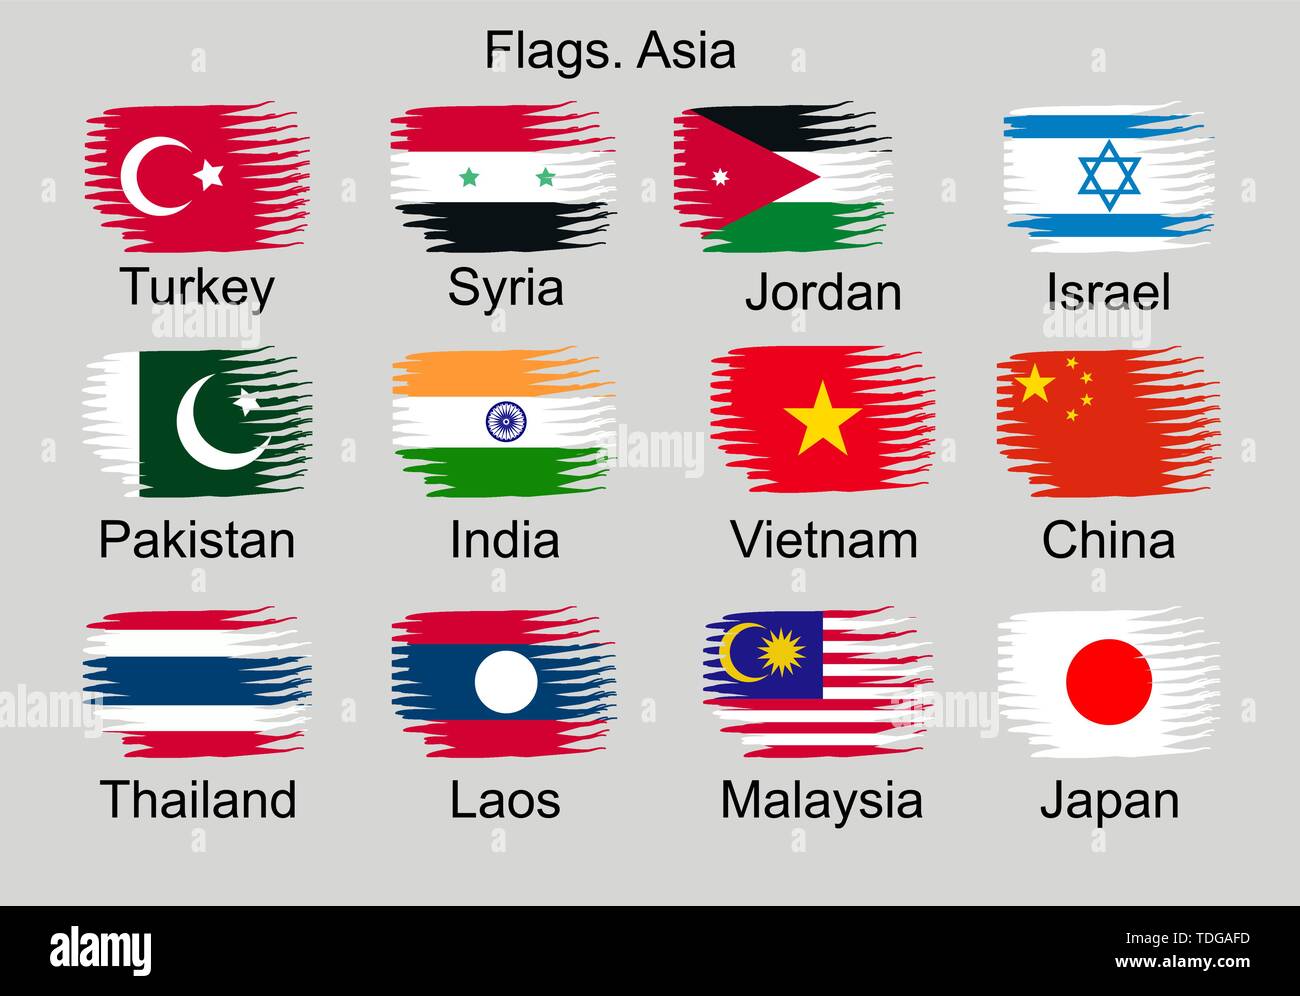 Flaggen der asiatischen Länder. Die Türkei, Pakistan, Syrien, Indien, China, Japan, Laos, Thailand, Israel, und andere. Stock Vektor